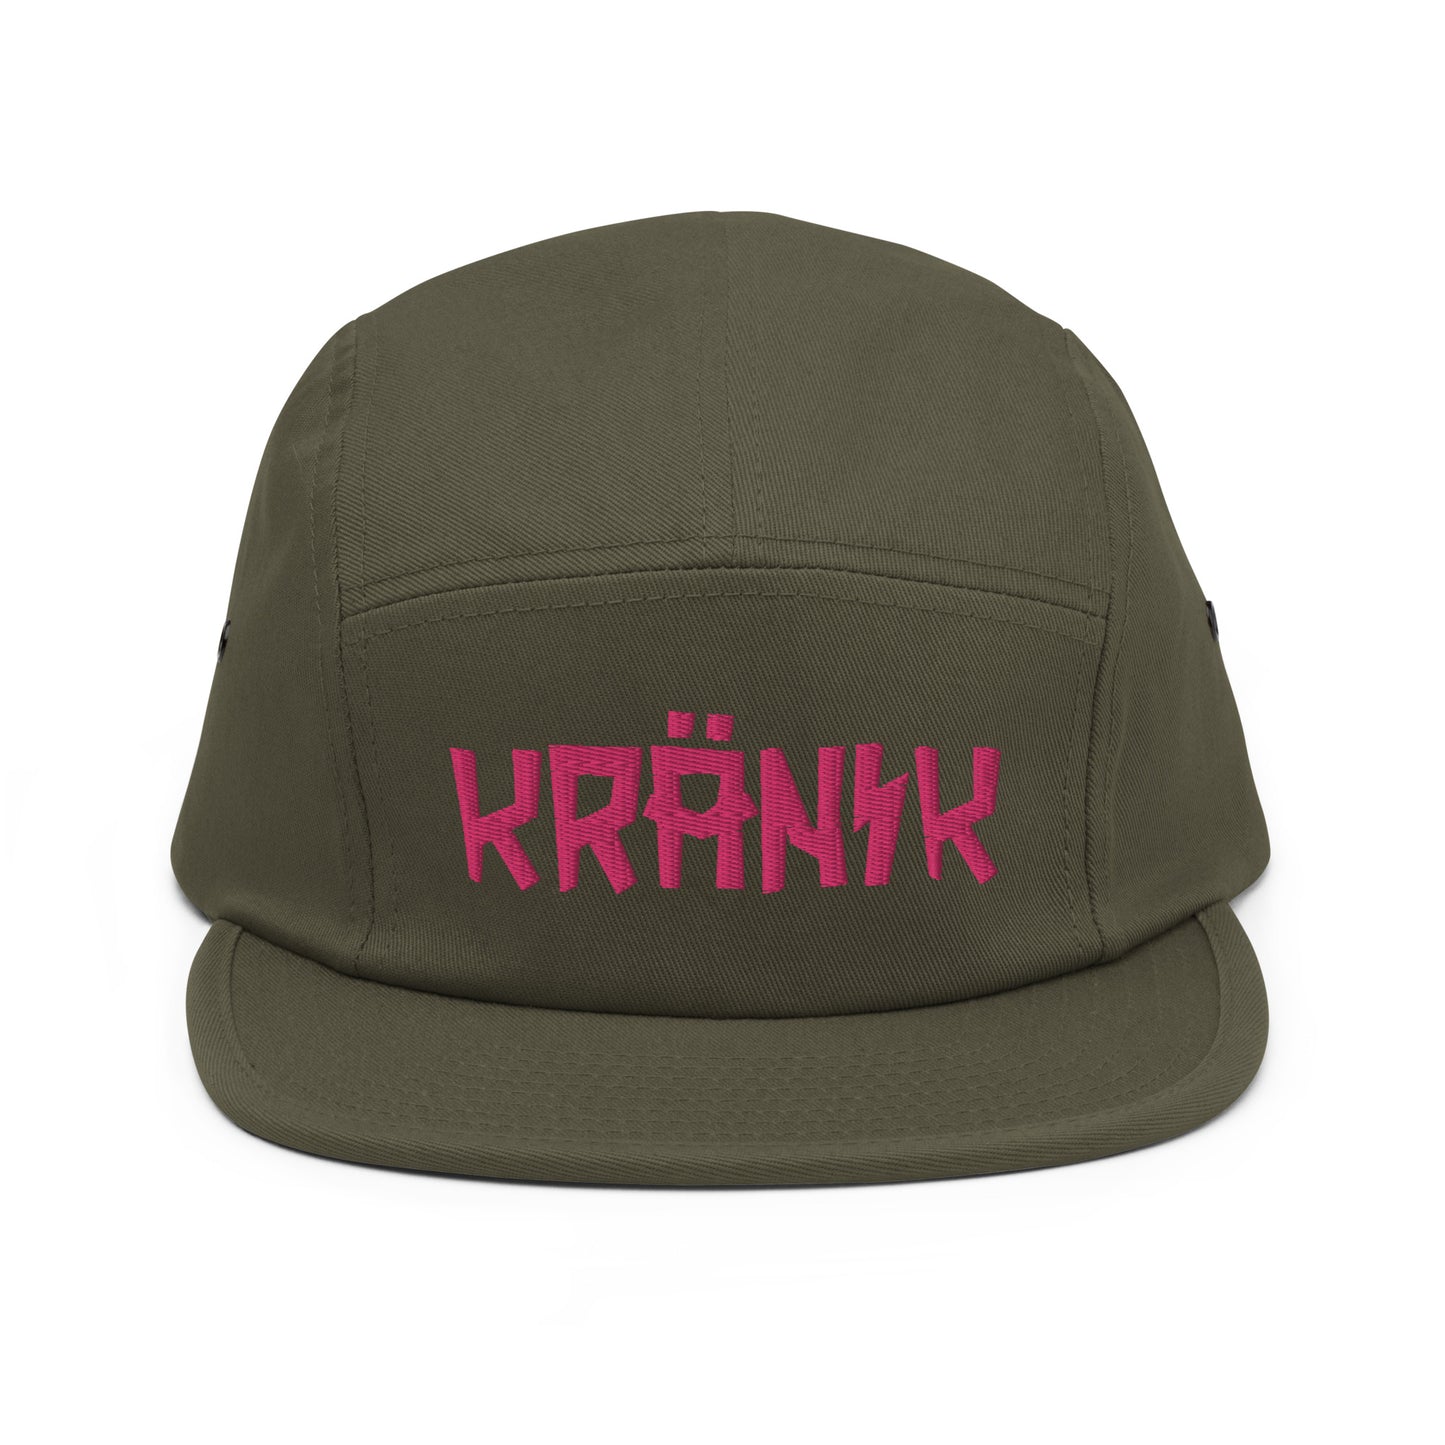 (6) Kranik Hat - Five Panel Cap - Fuchsia